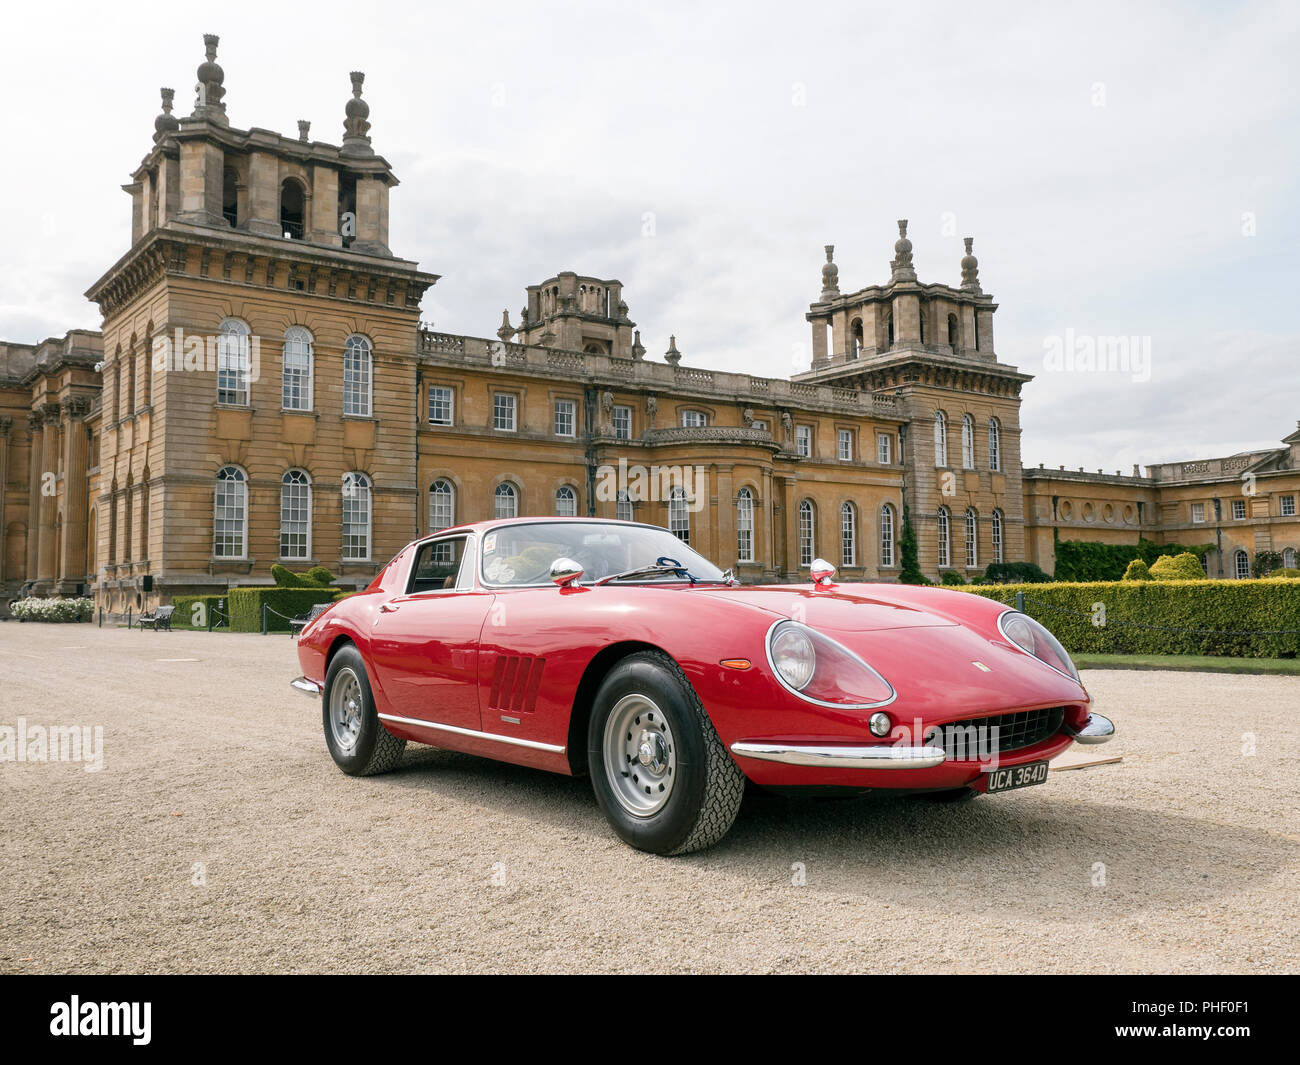 1966 Ferrari 275 GTB a Salon Prenotazione 2018 presso il Palazzo di Blenheim Woodstock Oxfordshire UK Foto Stock